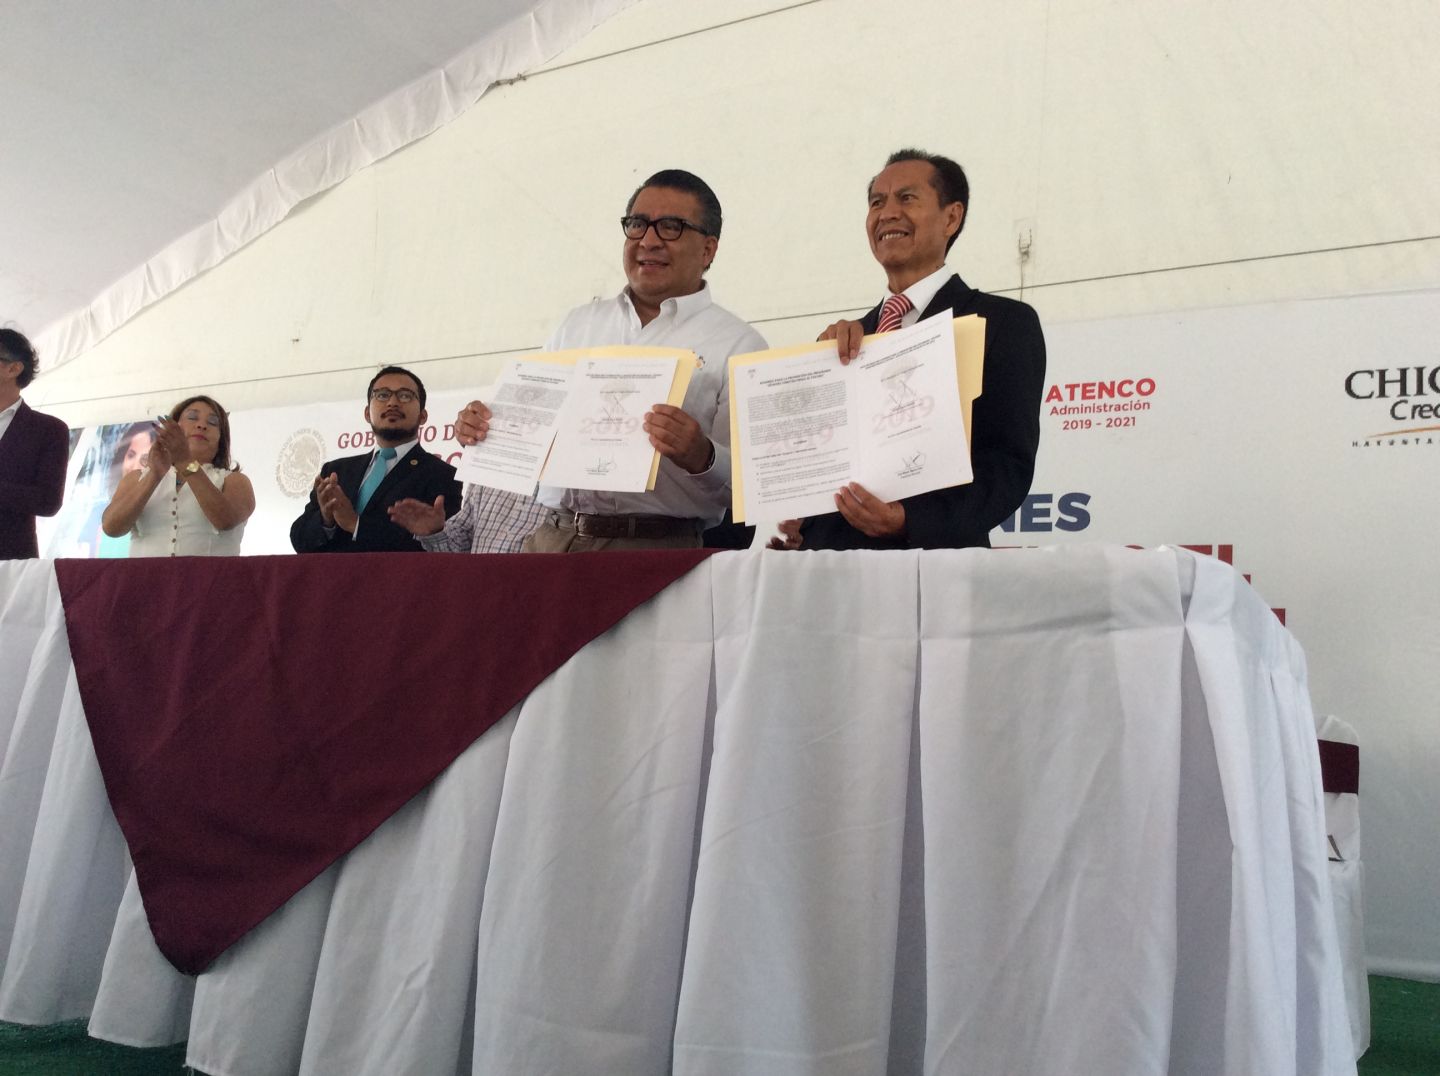 Chiautla y municipios circunvecinos firman convenio de colaboración "Jóvenes Construyendo el Futuro"
